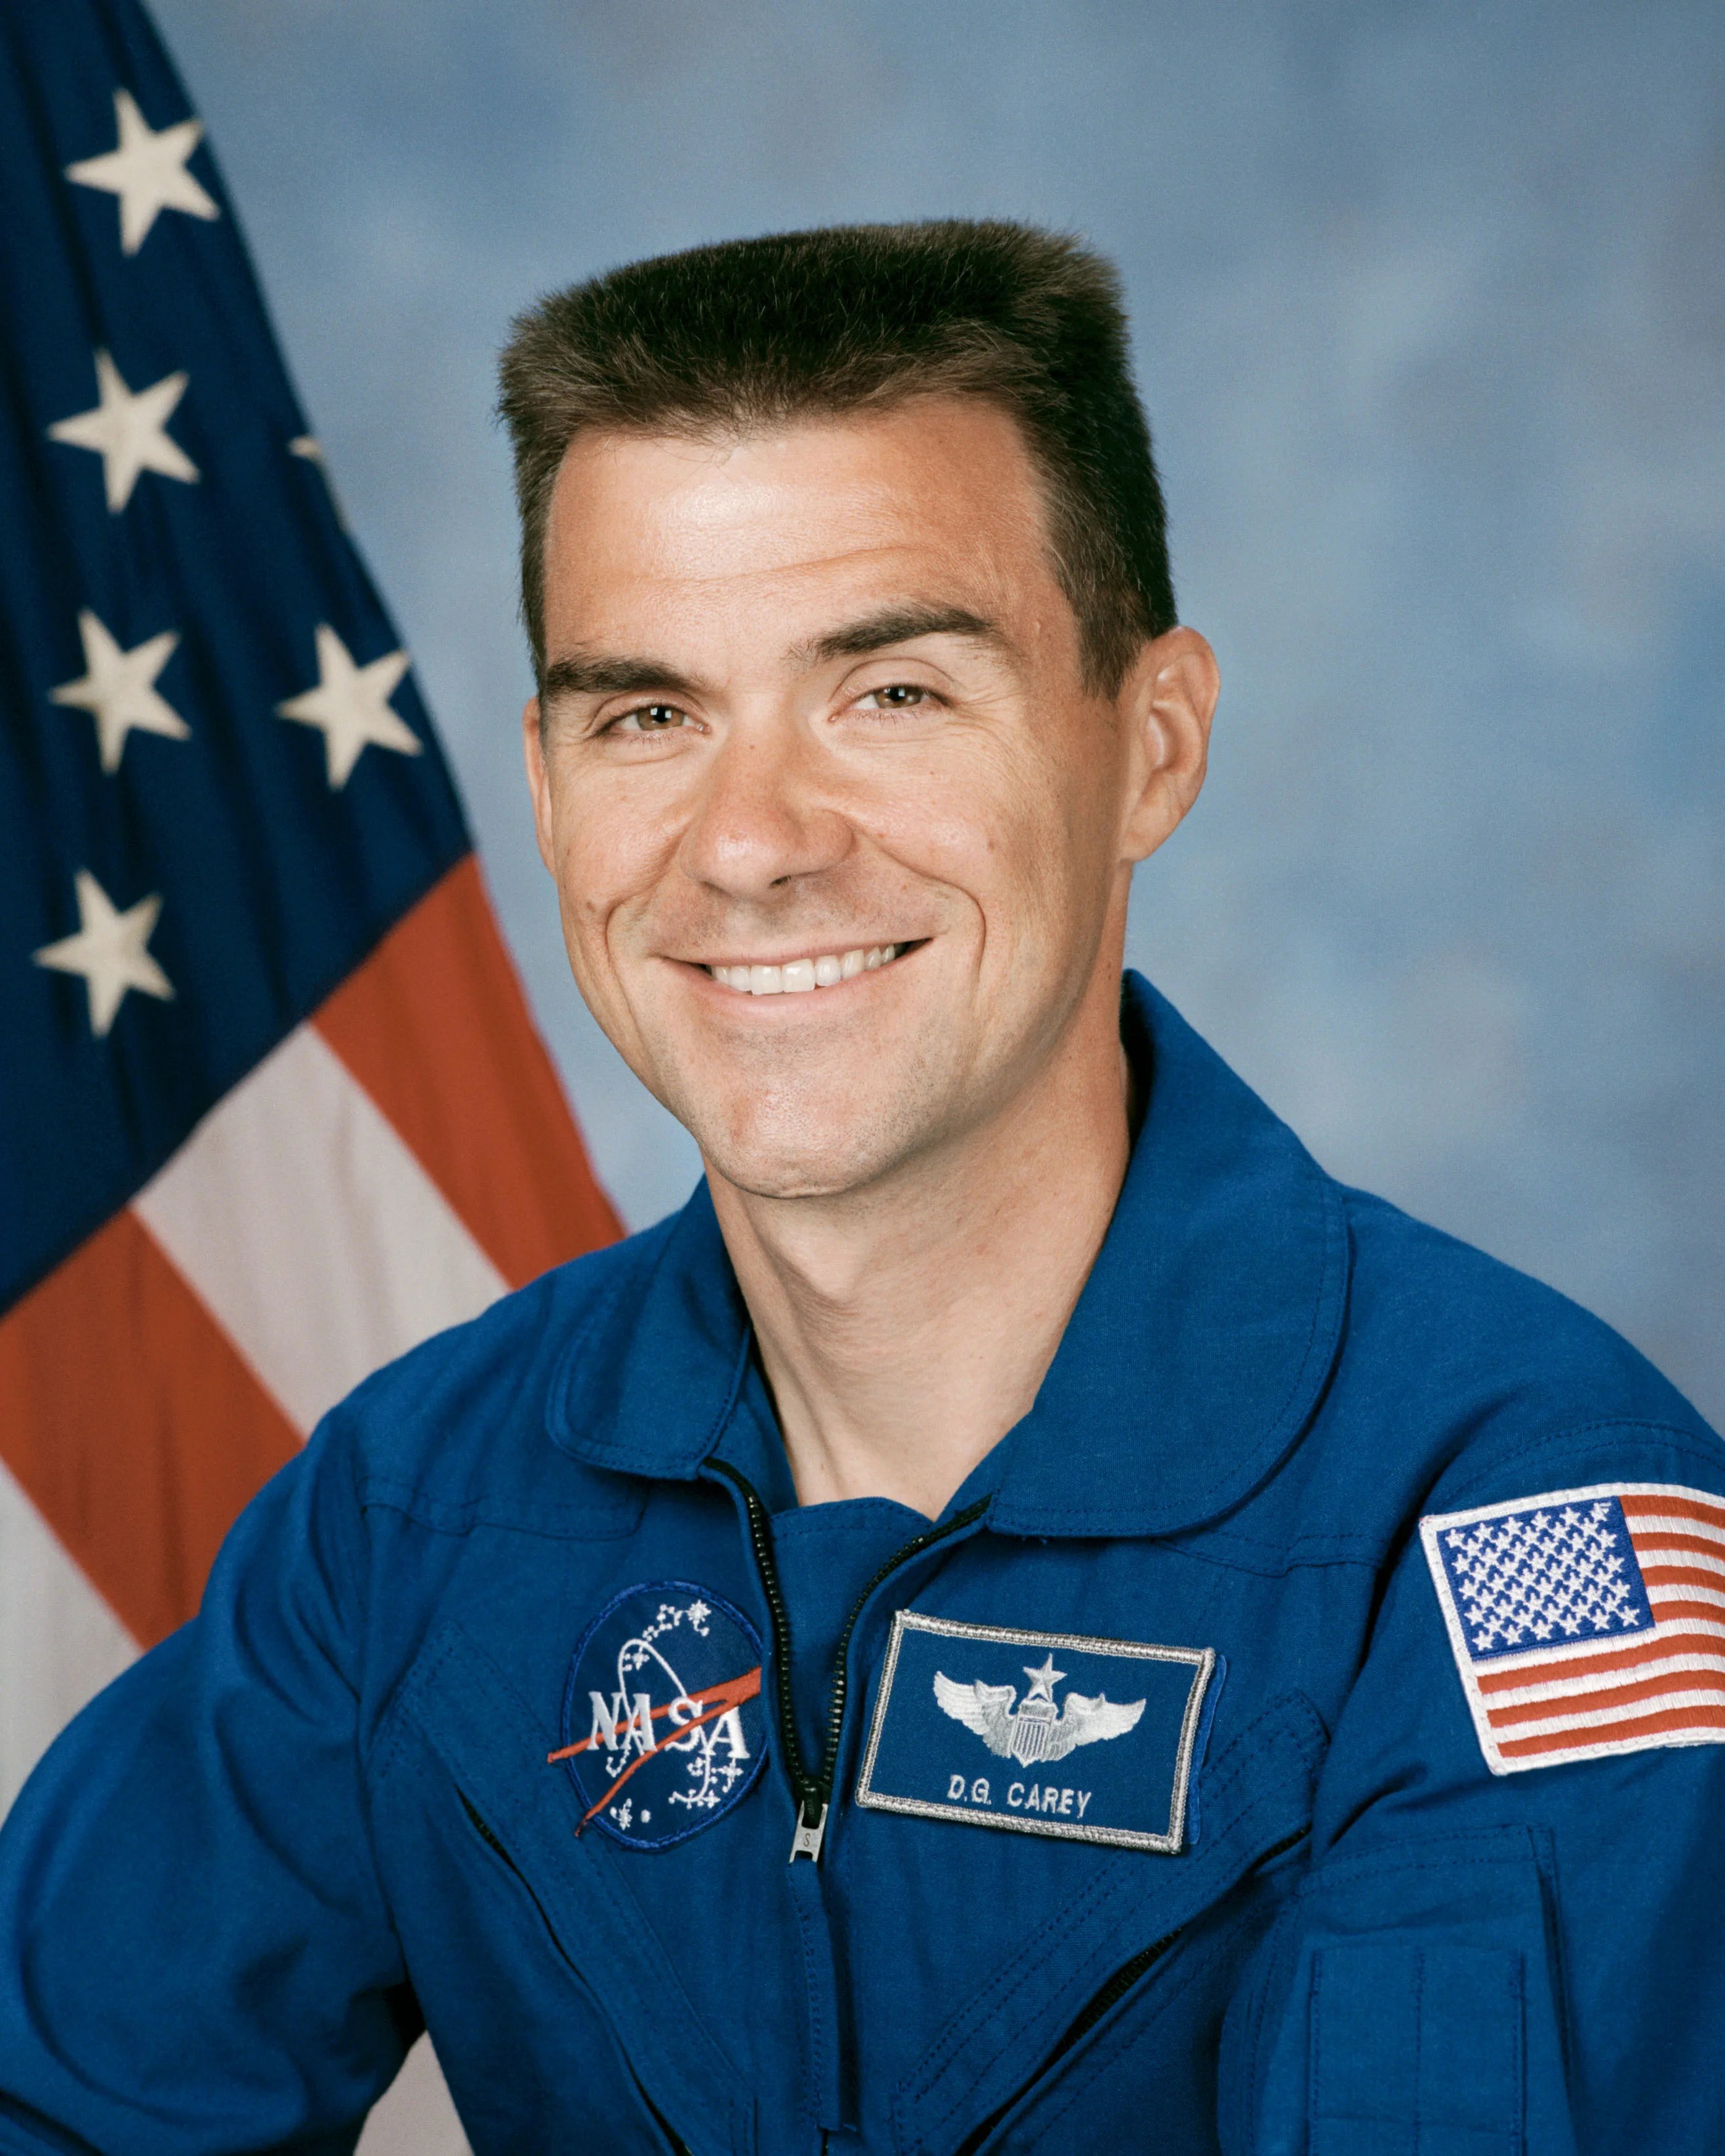 Official astronaut portrait of Duane Carey.